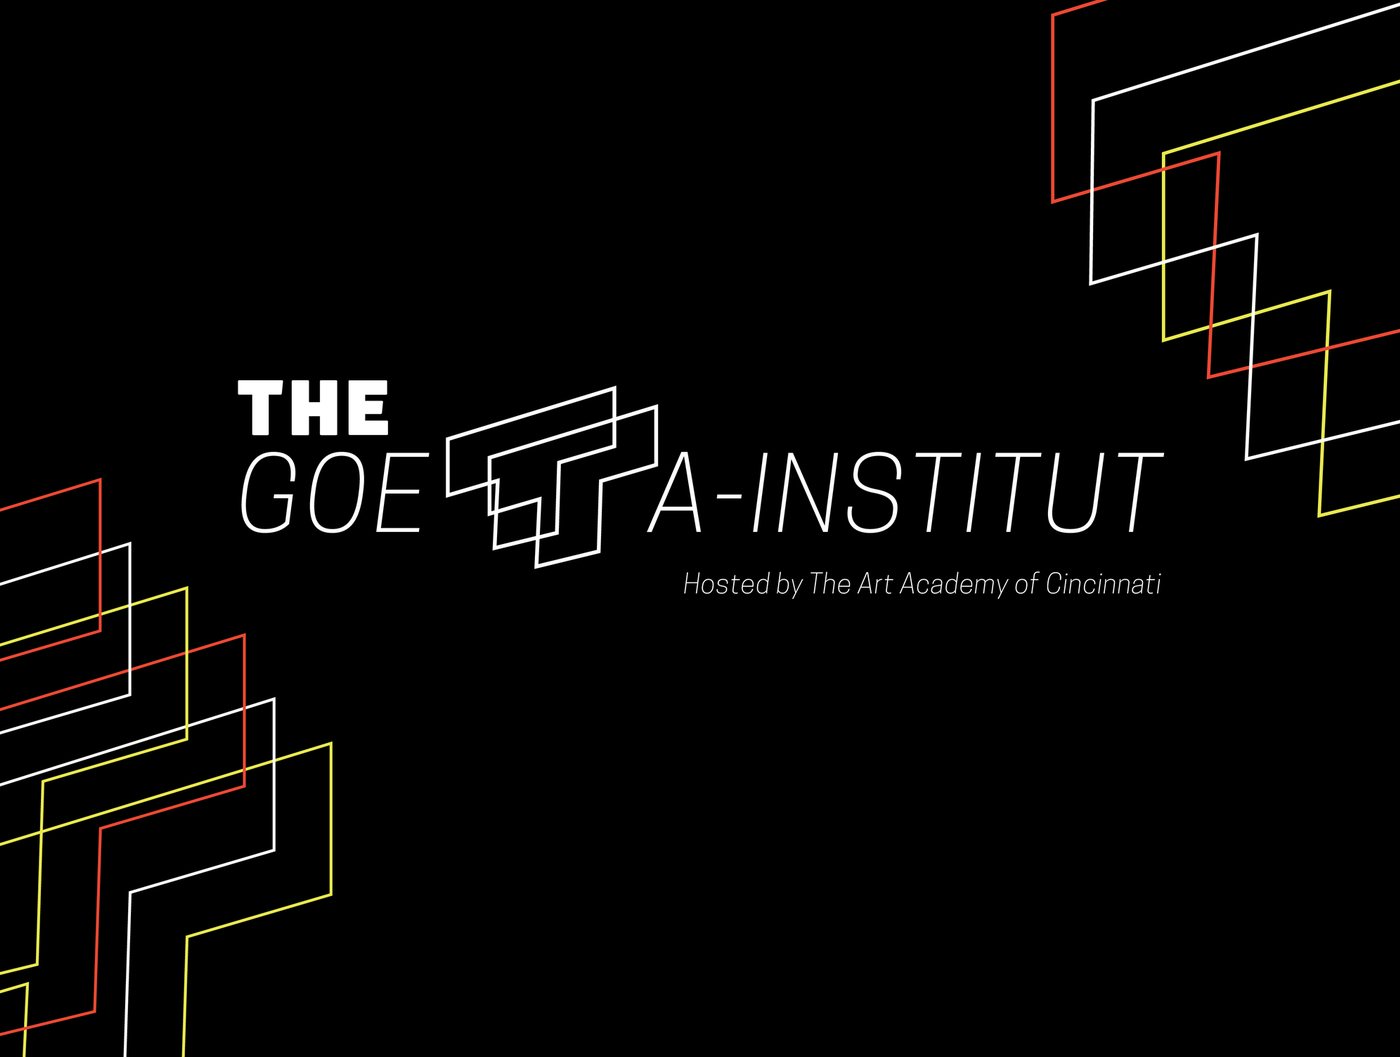 Goetta-Institut: 